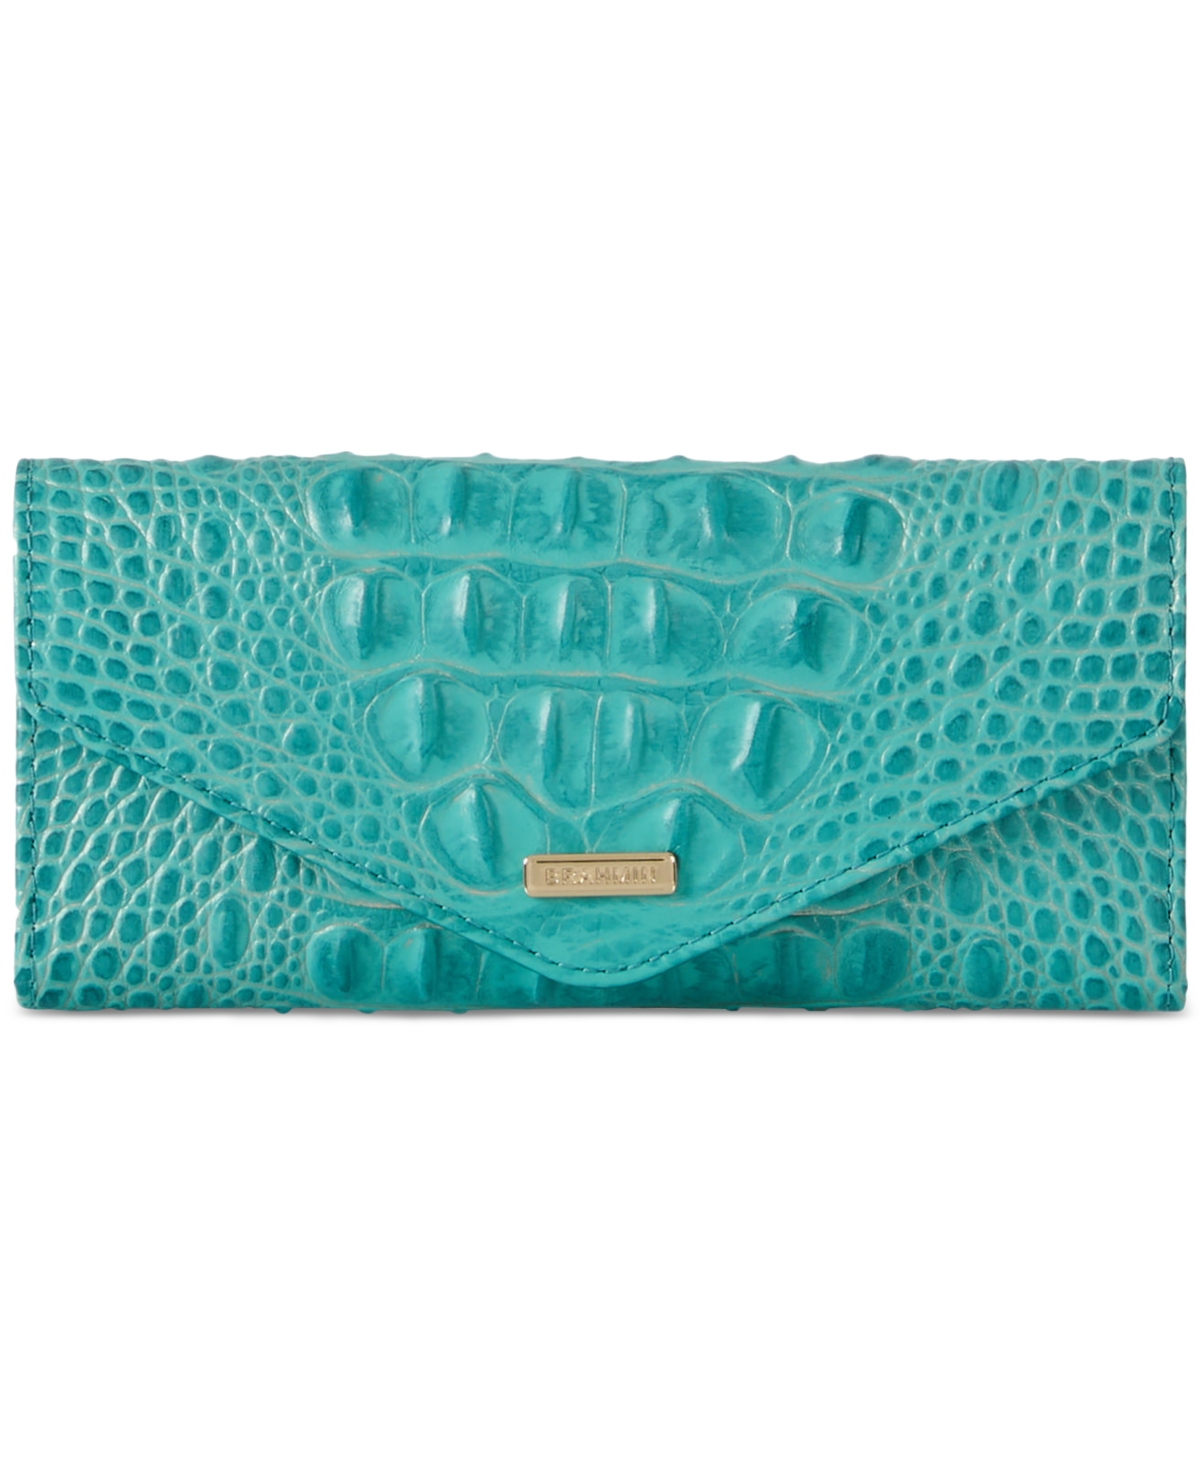 Shop Brahmin Veronica Melbourne Embossed Leather Wallet In Mermaid Gr